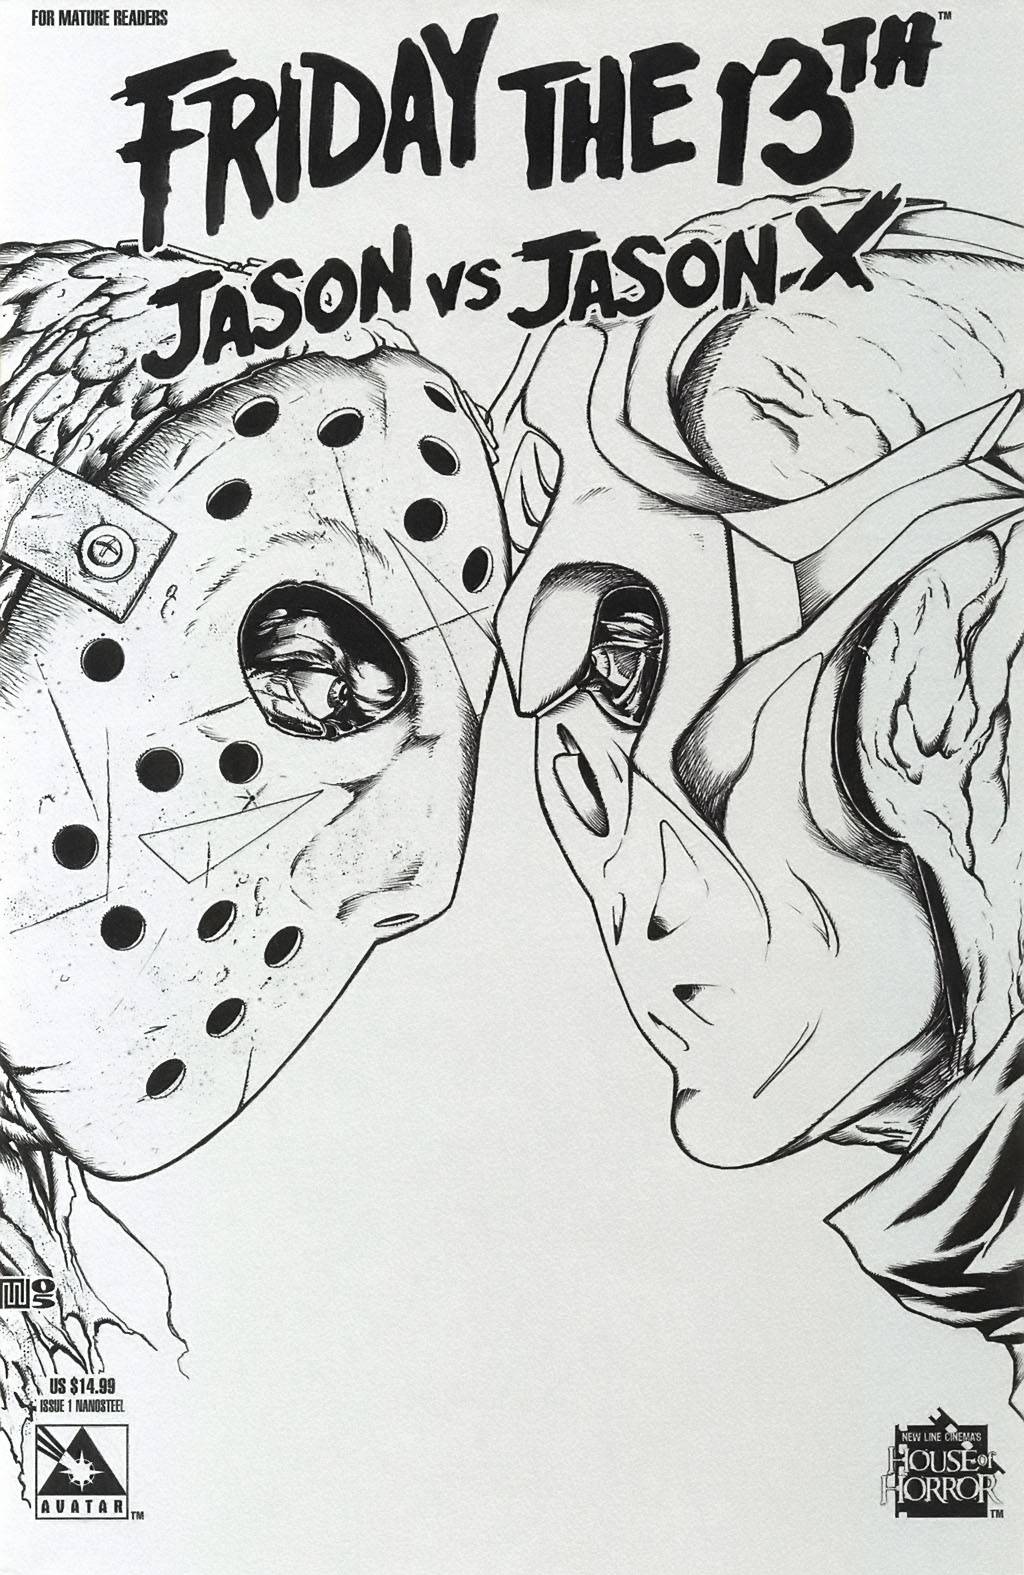 Пятница 13: Джейсон против Джейсона Икс №1 онлайн